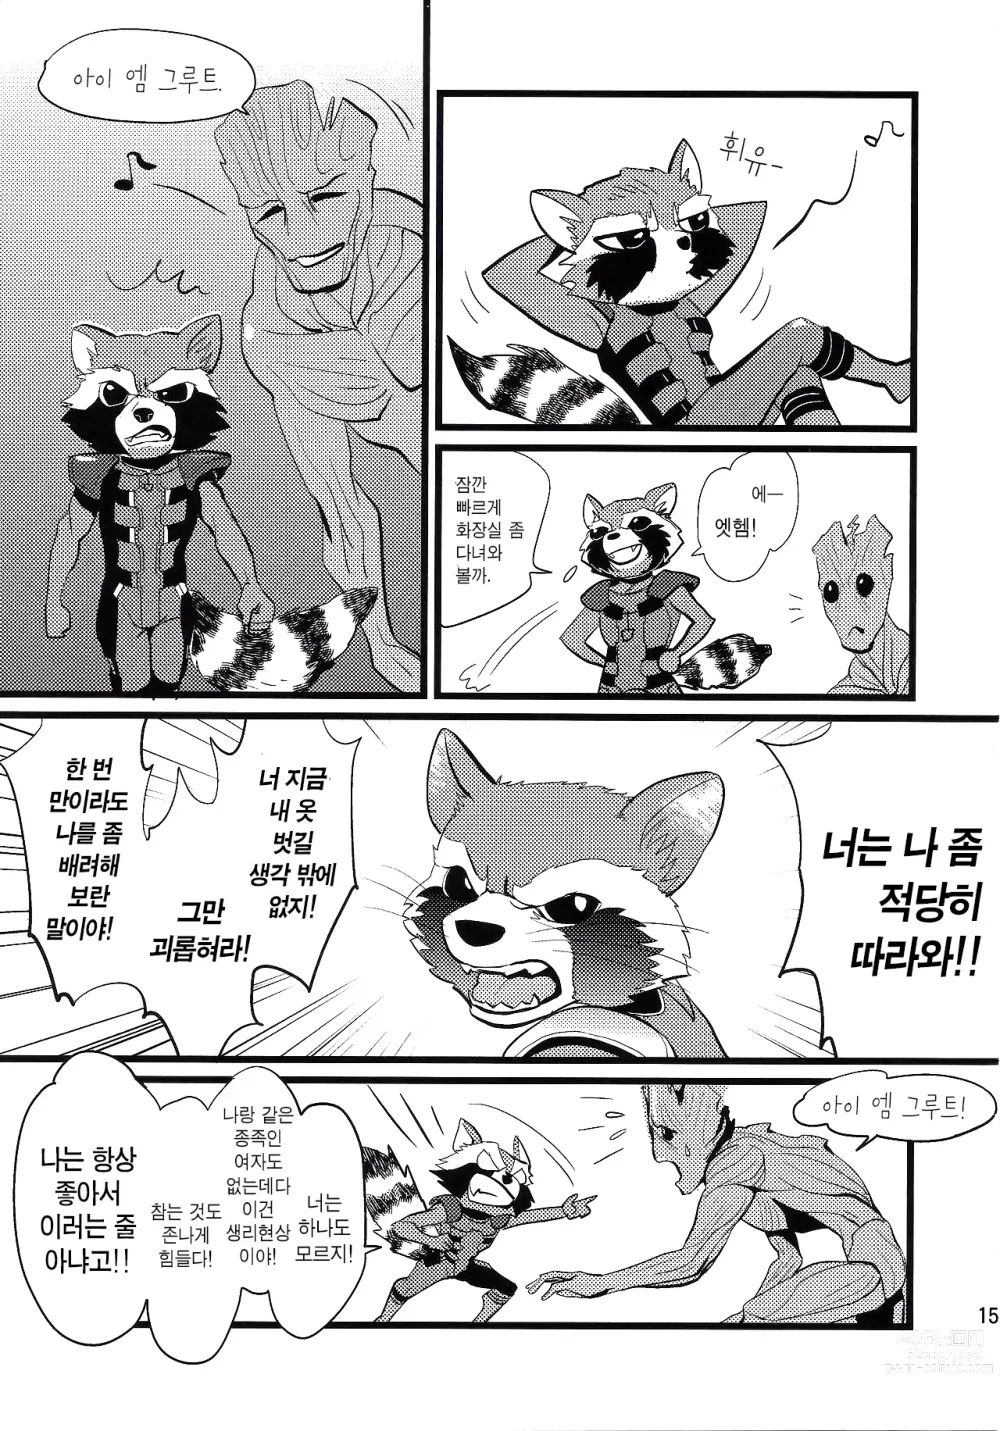 Page 14 of doujinshi 로켓 스타트!